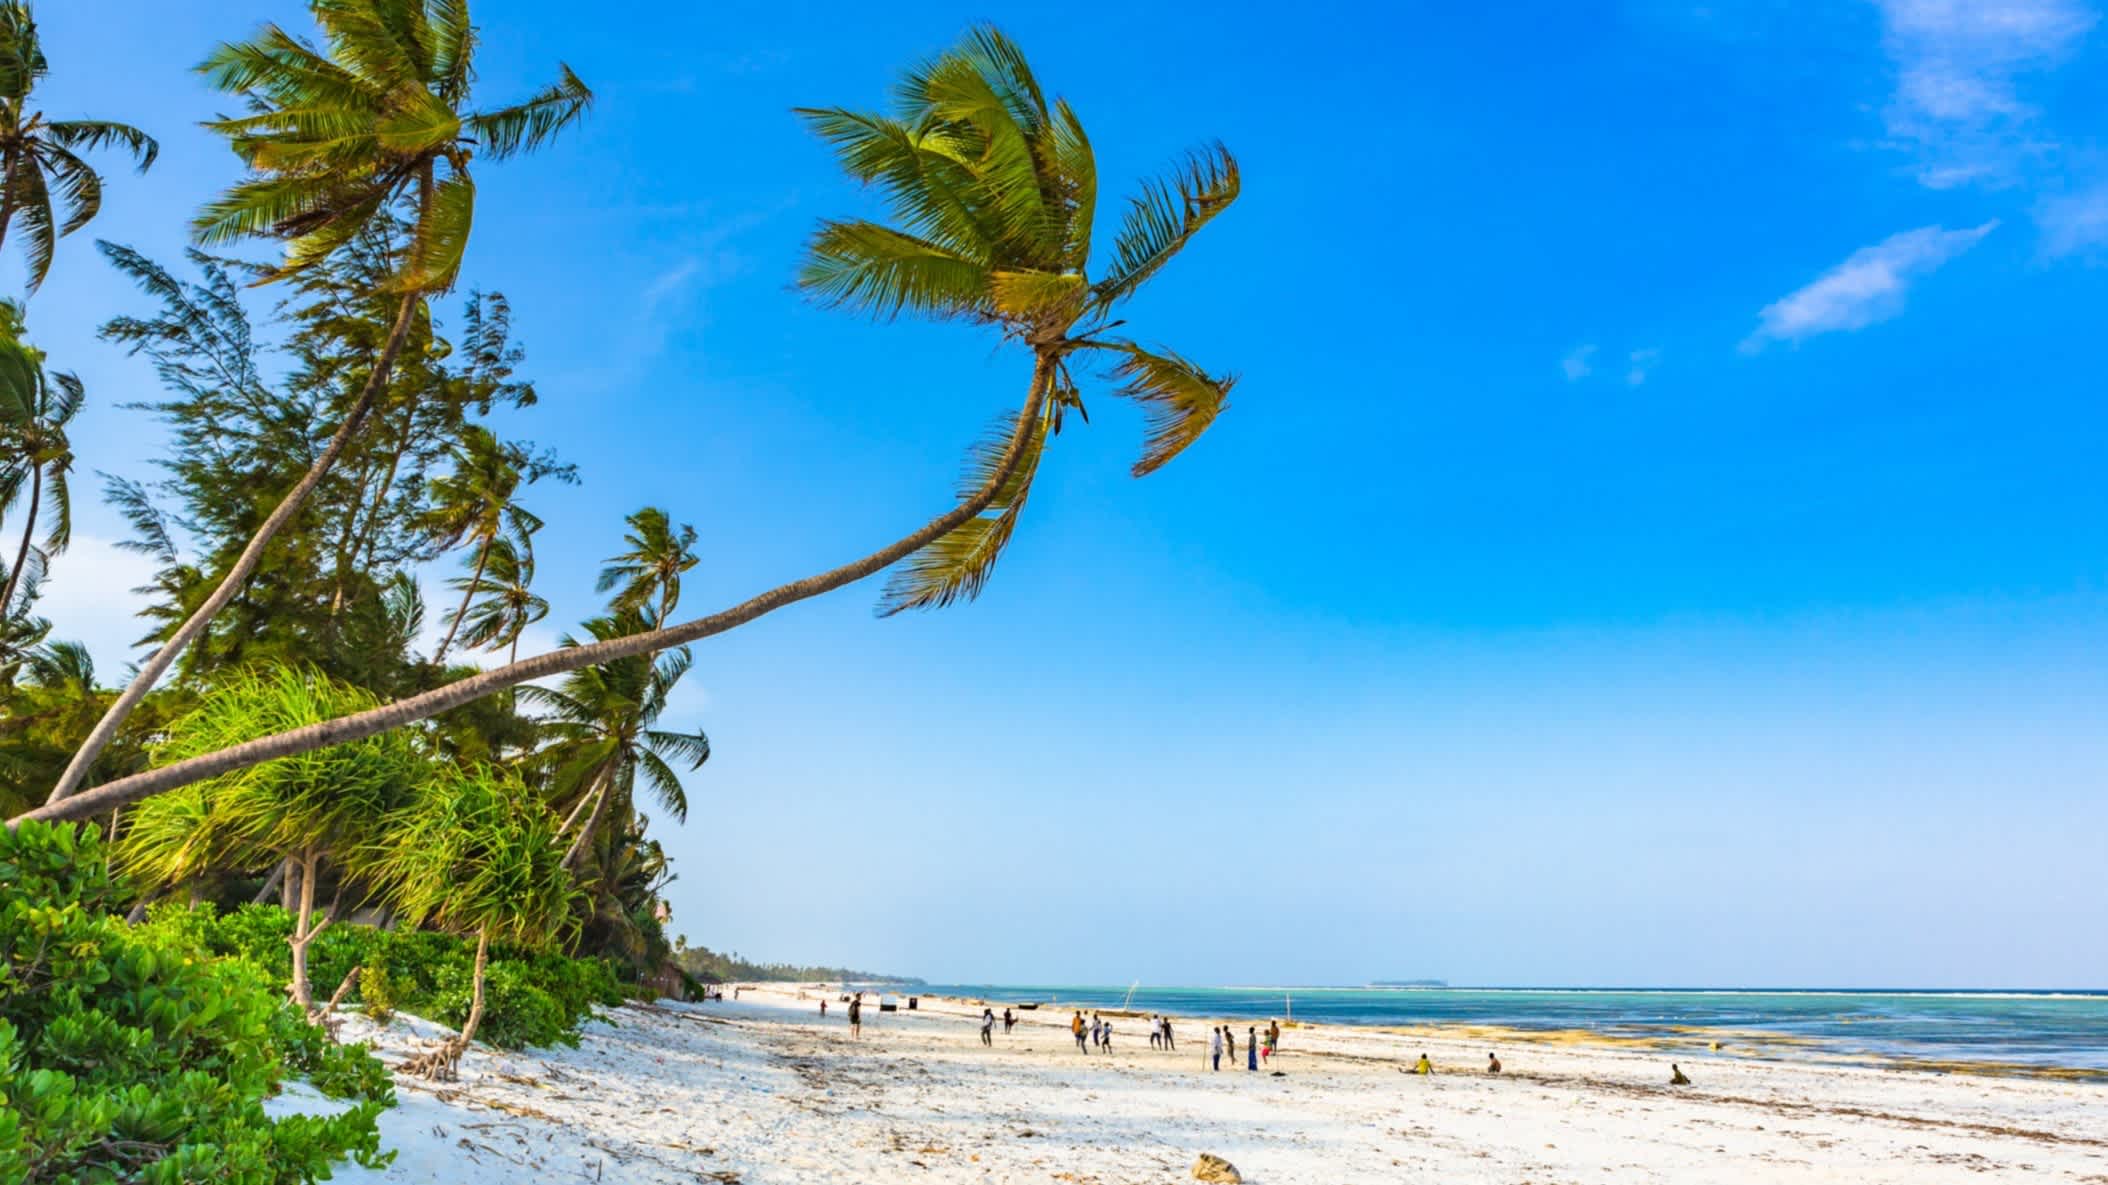 Der Strand von Matemwe auf der Insel Sansibar in Tansania, Afrika bei strahlend blauem Himmel und wedelnden Palmen. 
